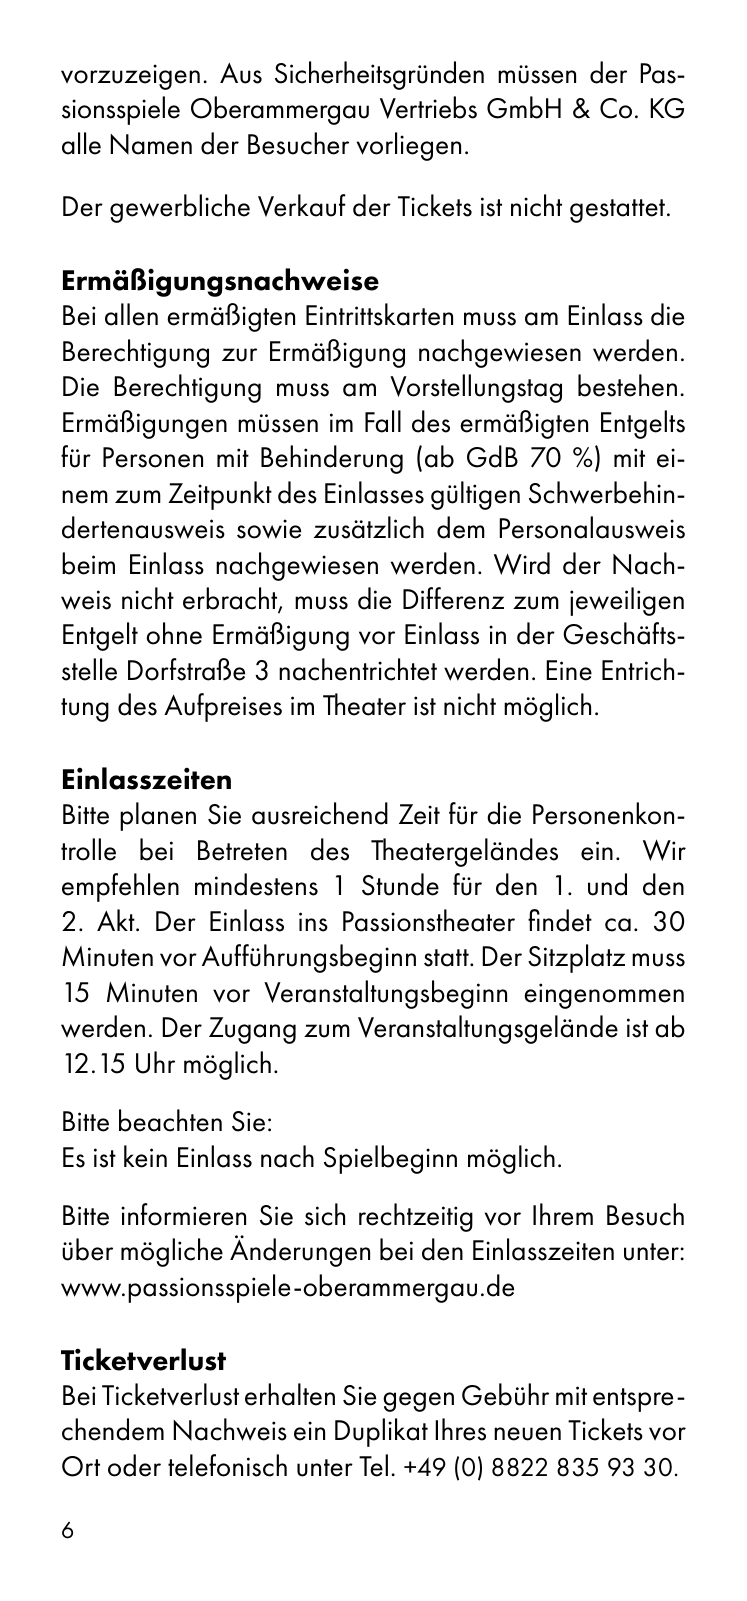 Vorschau Besucherinformation - Ticket only 24.08. Seite 6